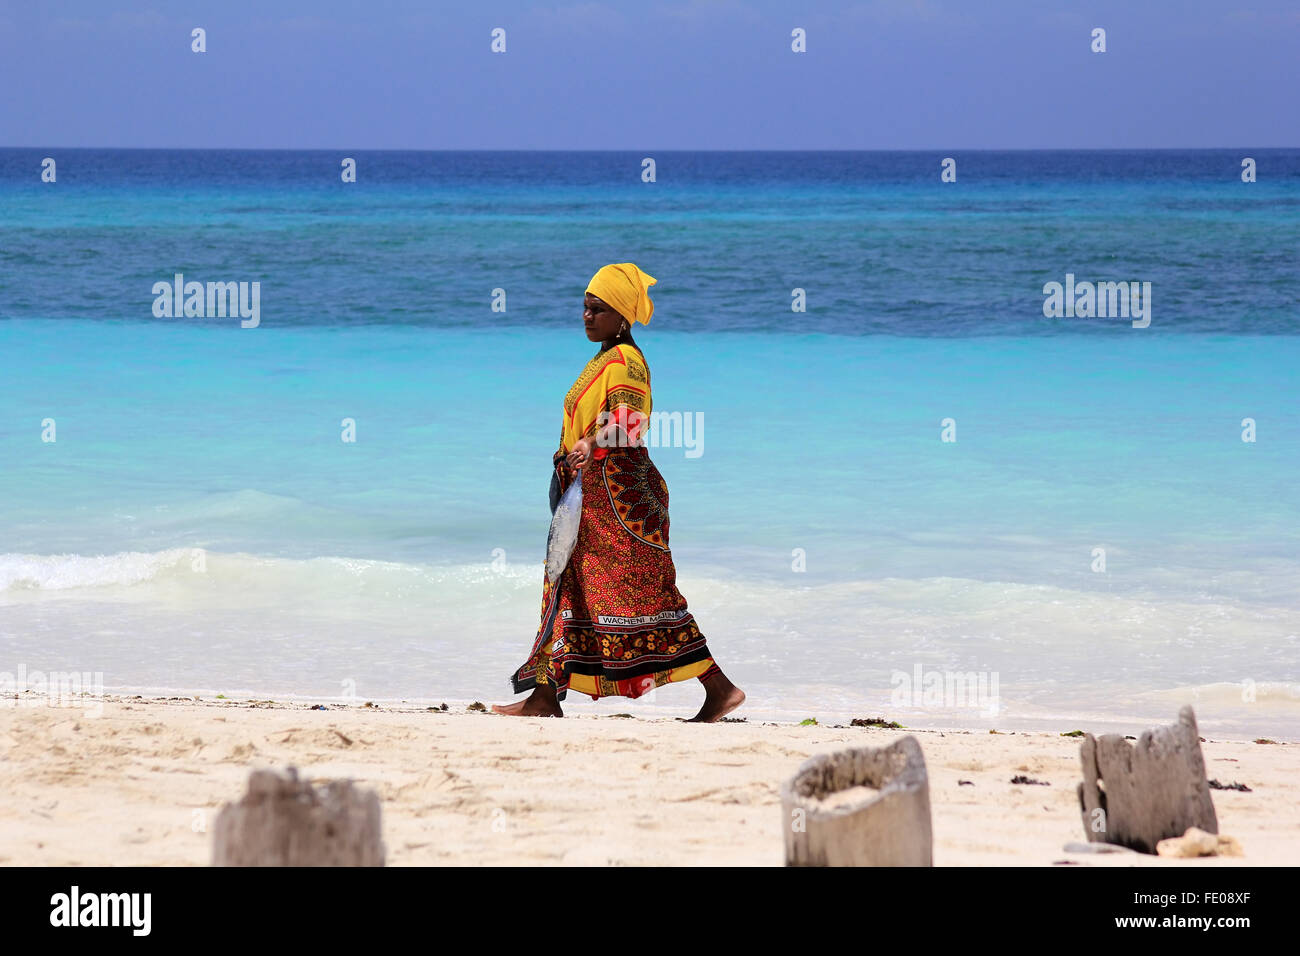 Zanzibar, Tanzanie - 7 janvier 2016 : une femme africaine en tenue  traditionnelle avec des poissons marche le long de la plage. Zanzibar,  Tanzanie Photo Stock - Alamy